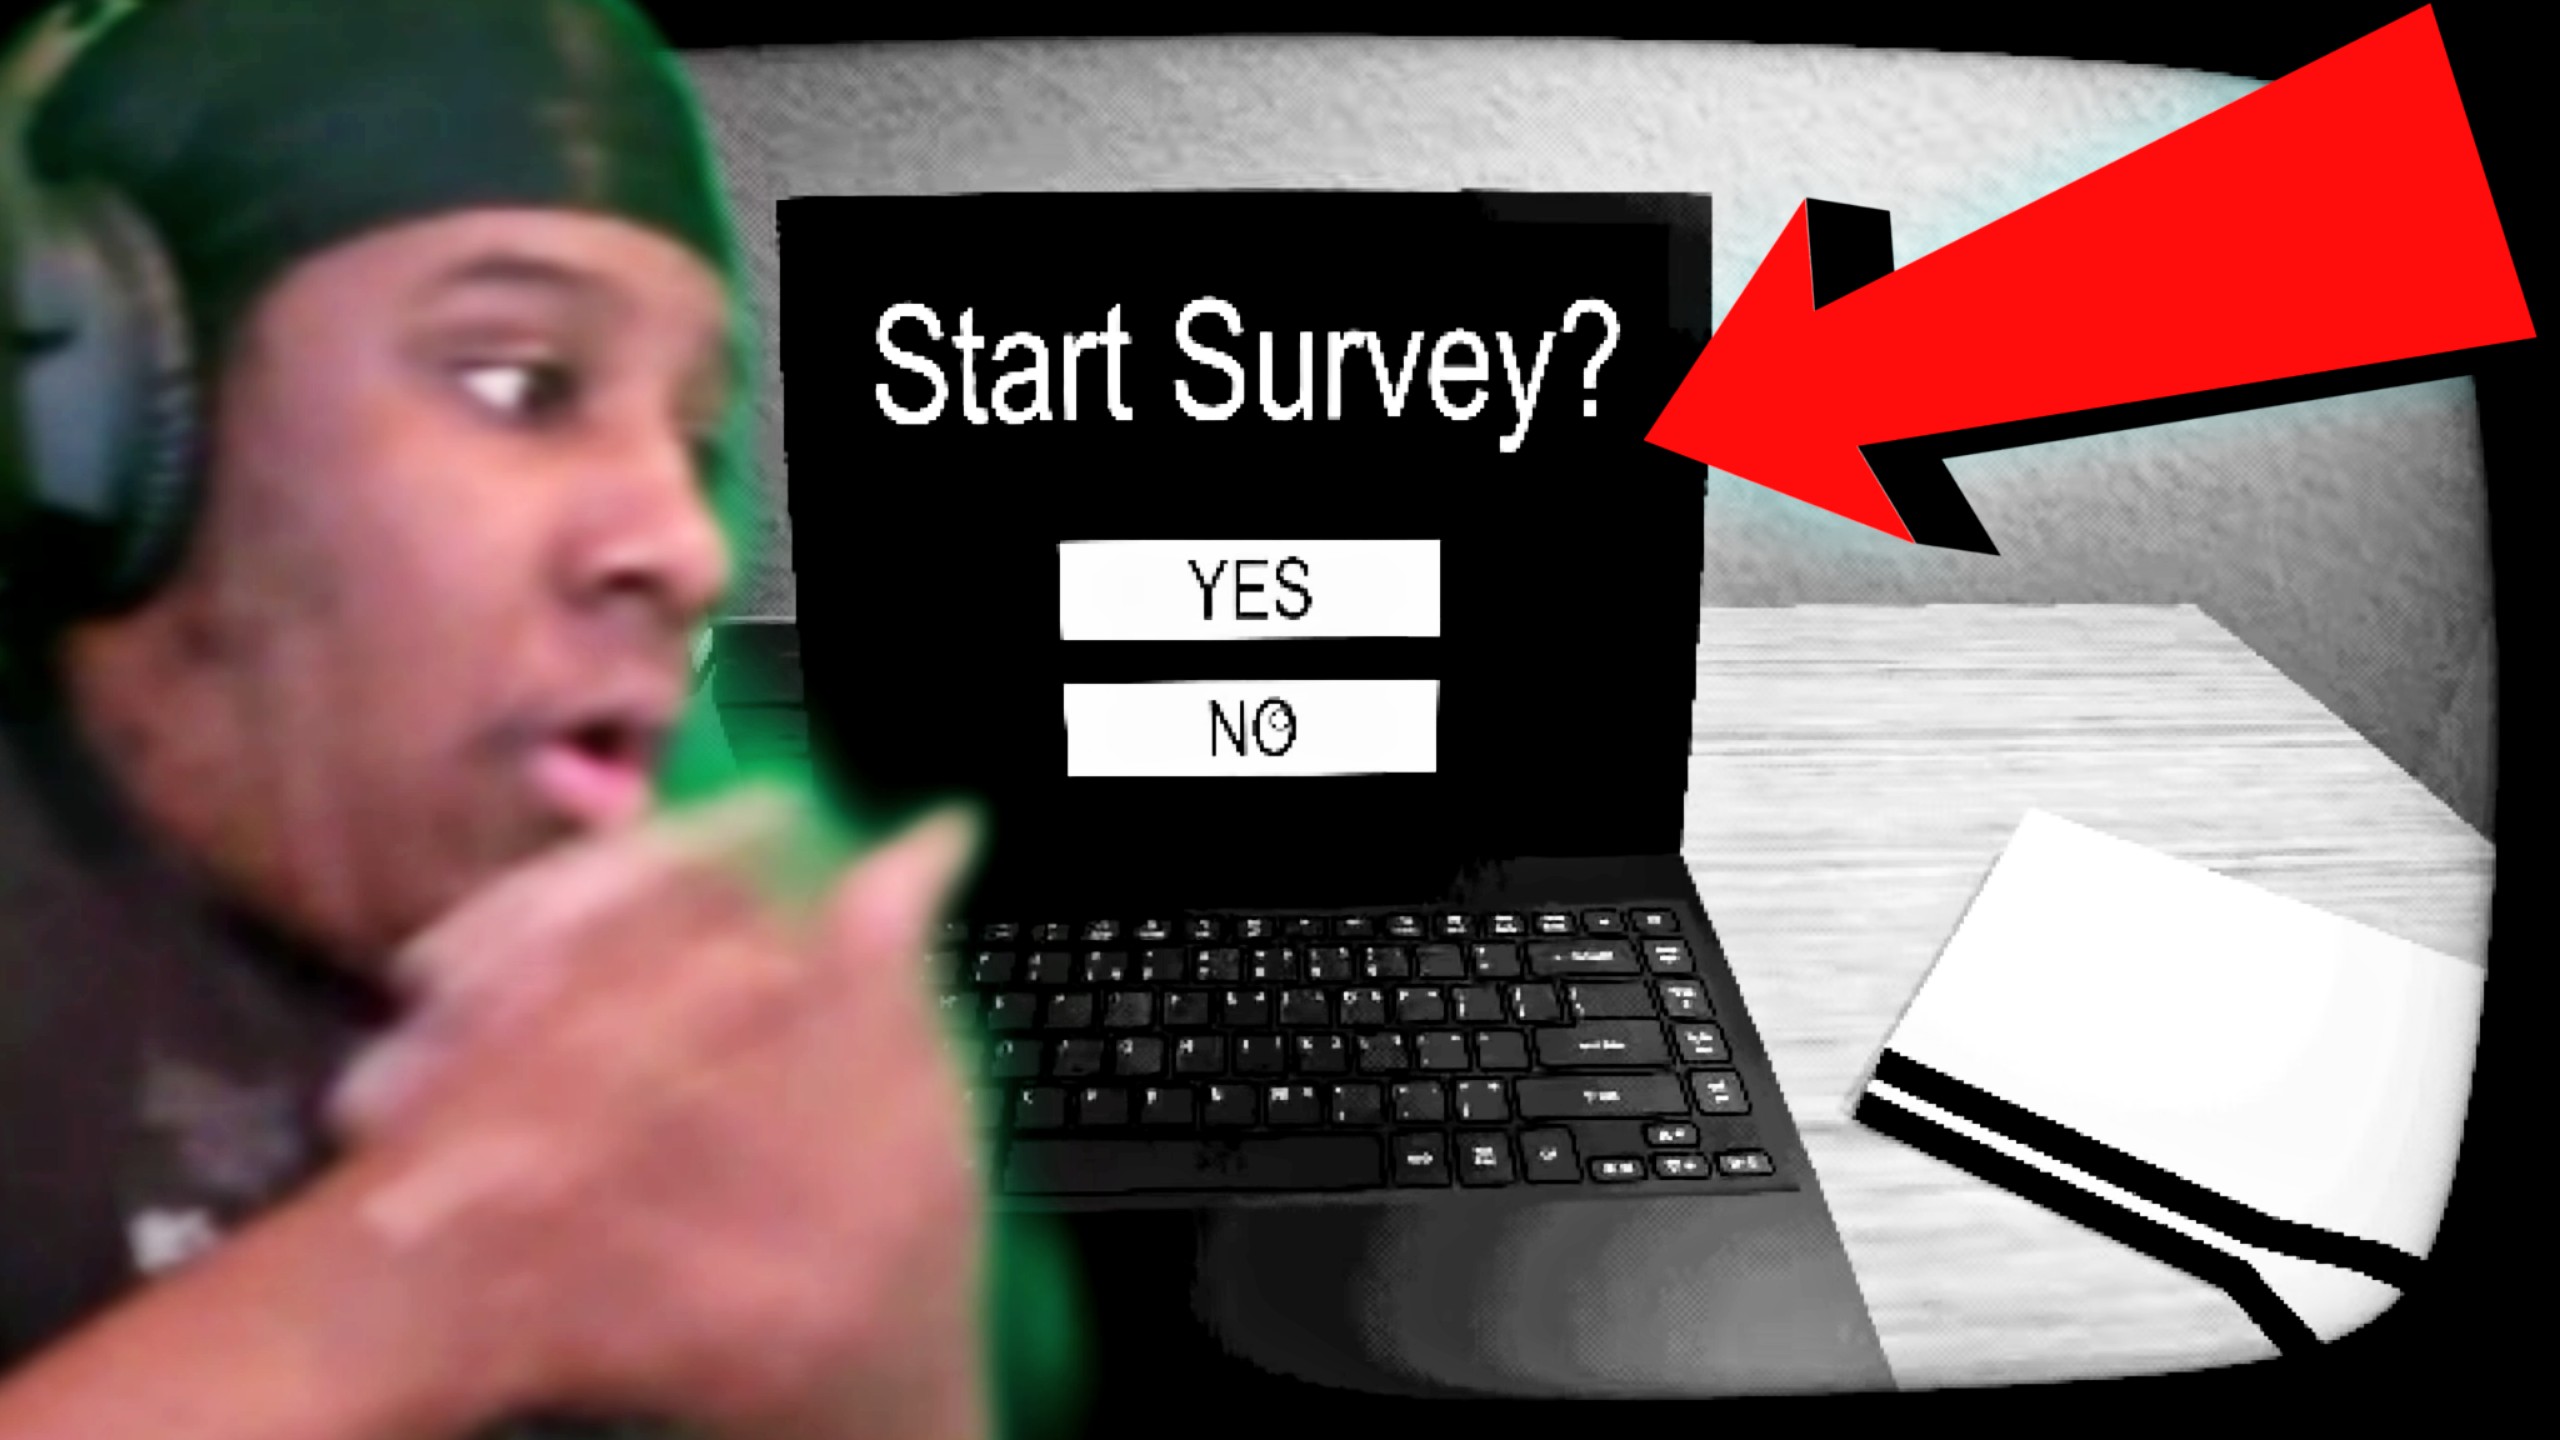 Start Survey?